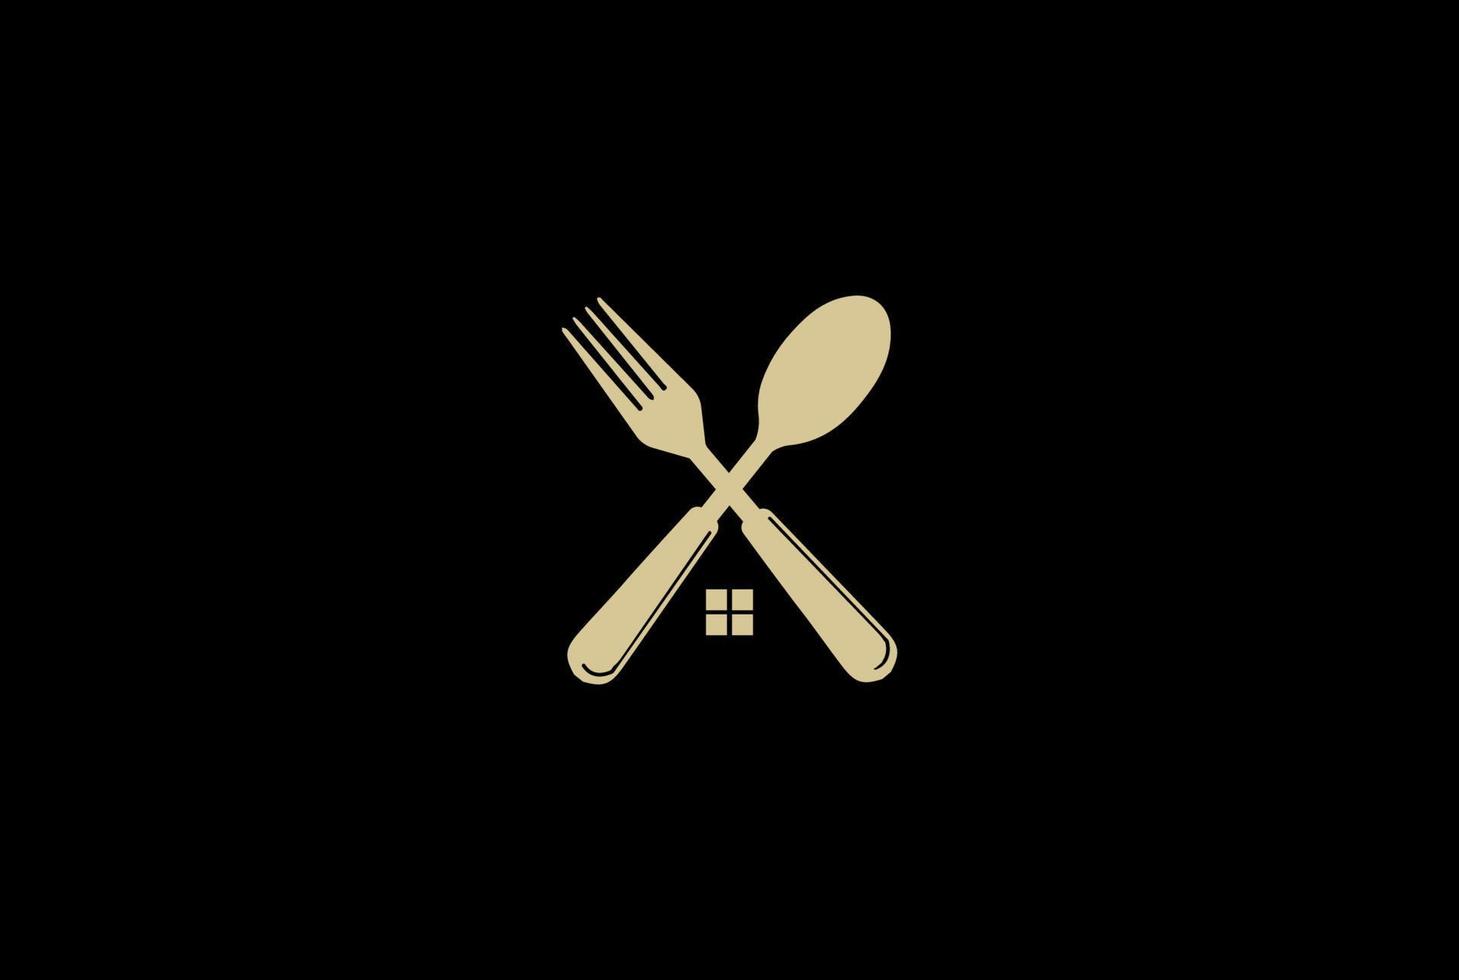 hus sked och gaffel för restaurang eller kök logotyp design vektor